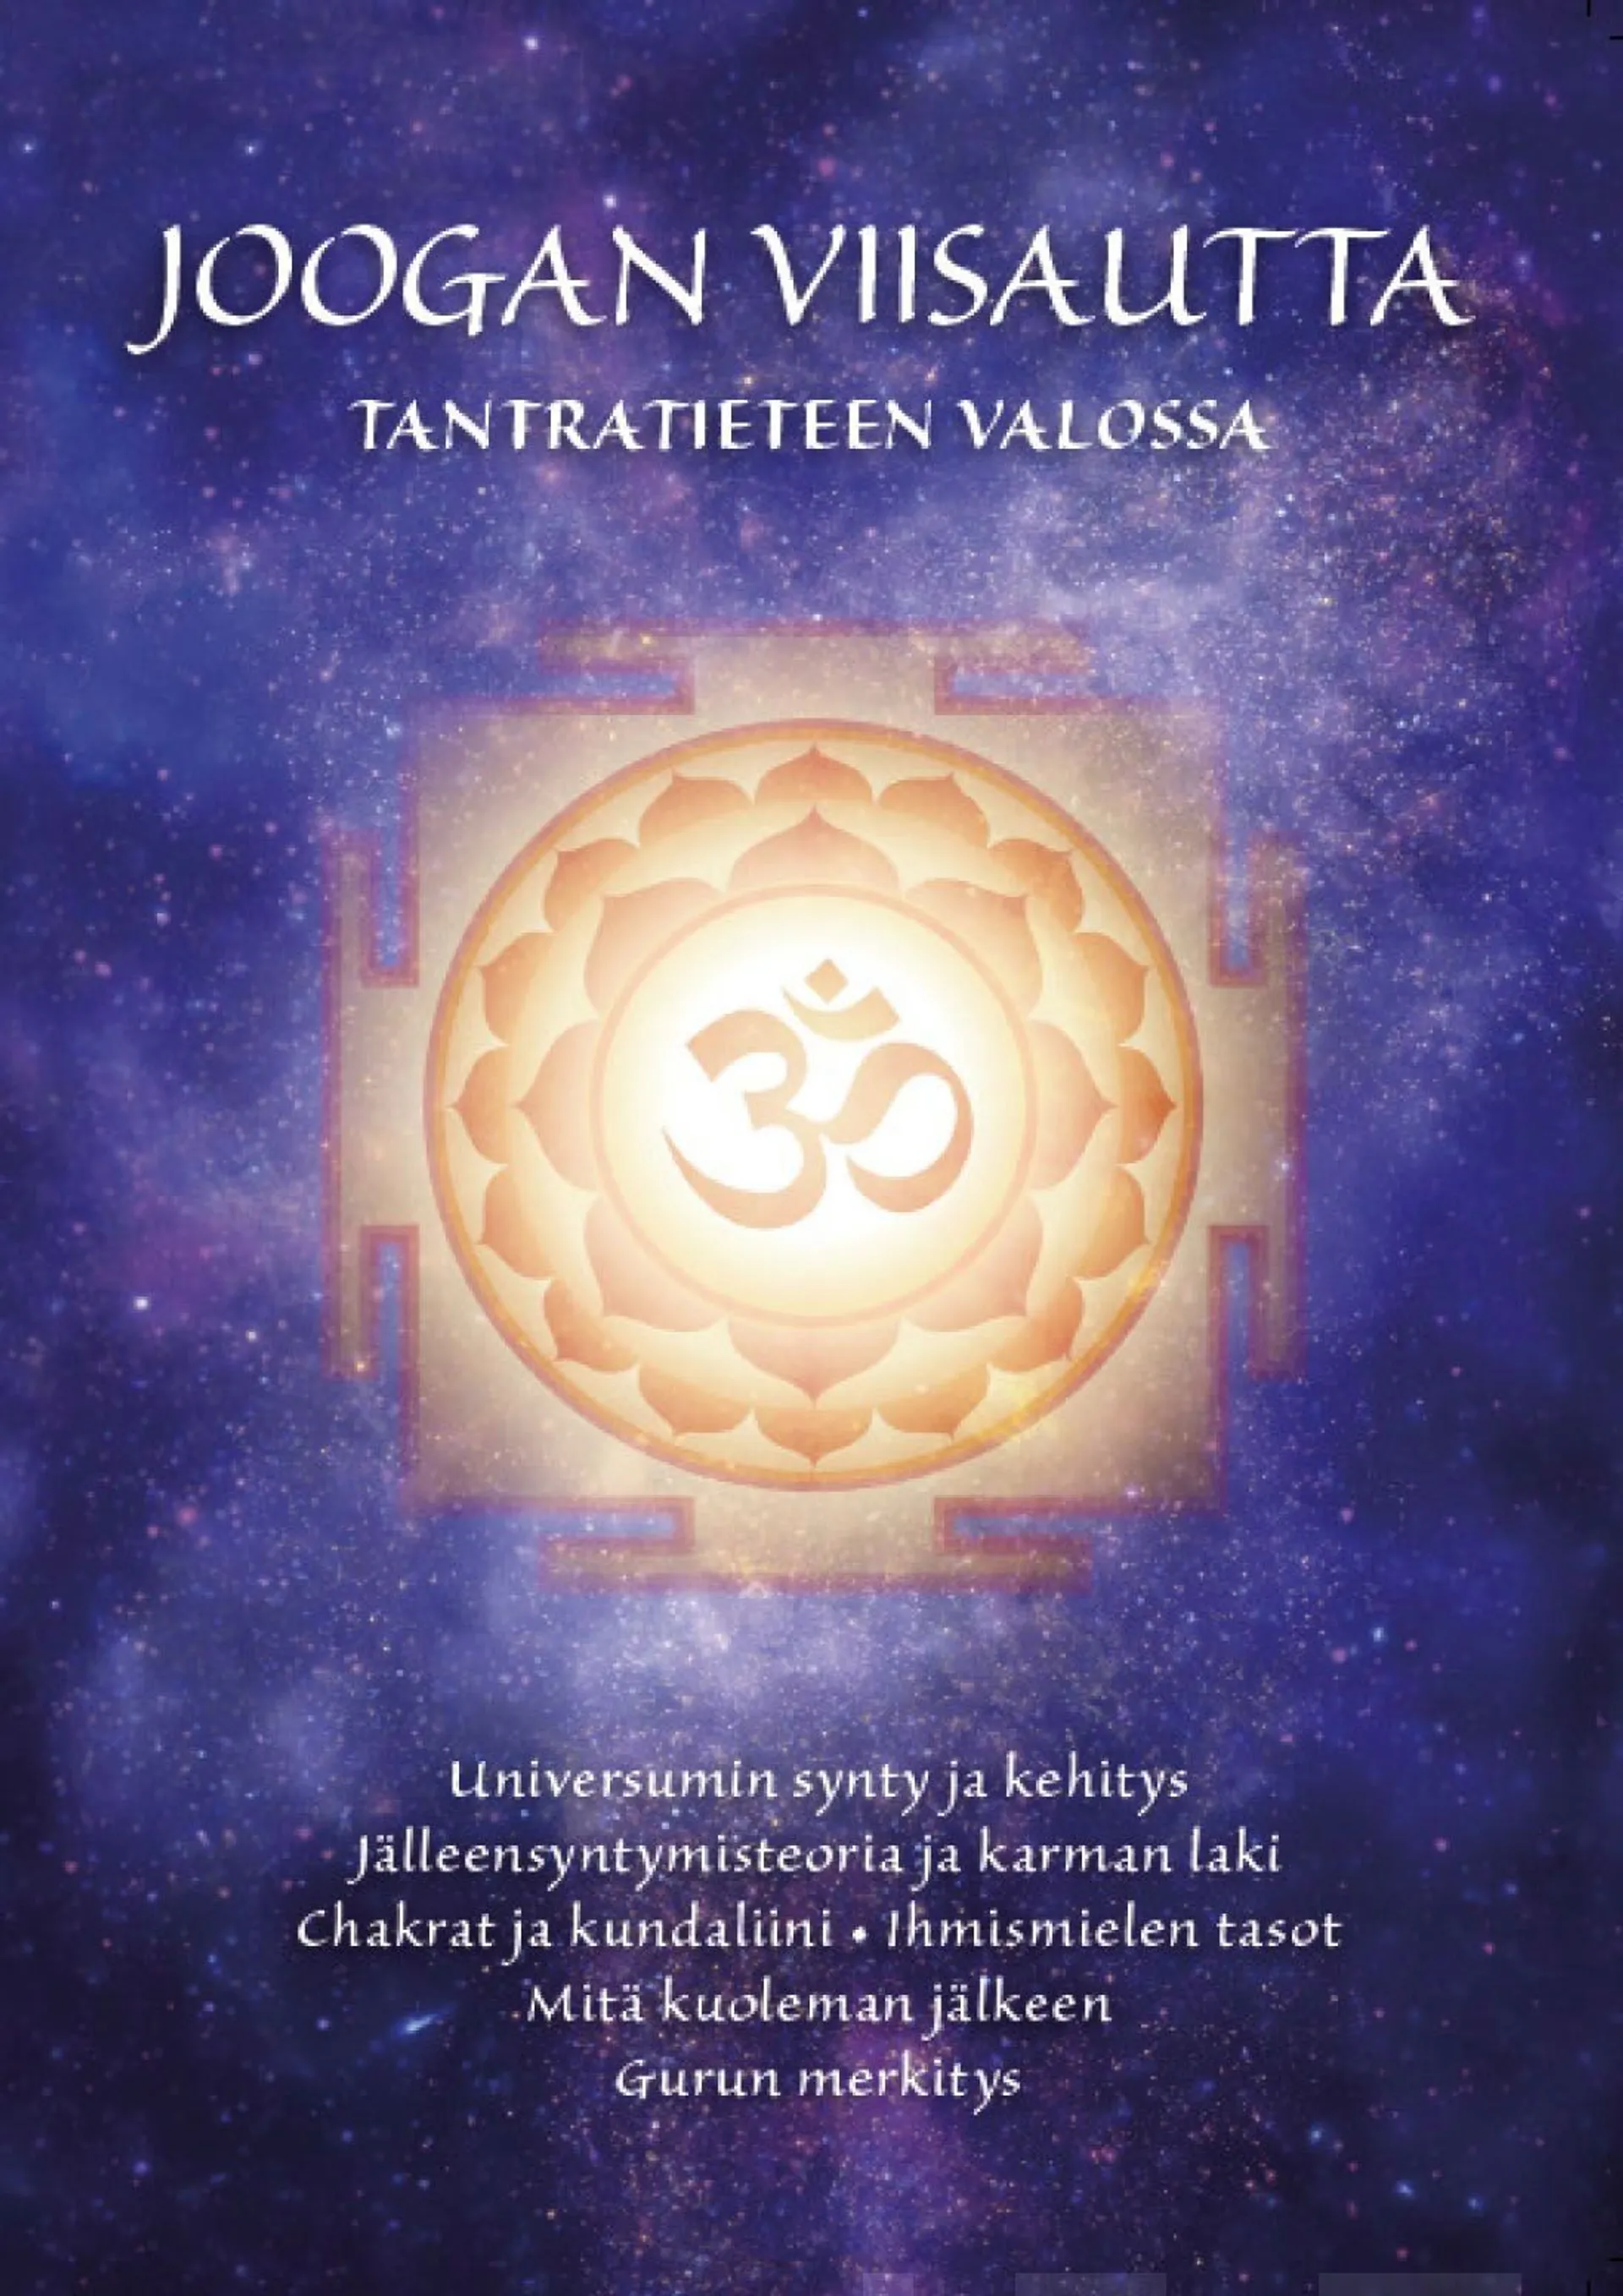 Joogan viisautta tantratieteen valossa - Shrii Shrii Anandamurtin opetukset ja Maetreyii Nolanin välittämät intuitiiviset viestit